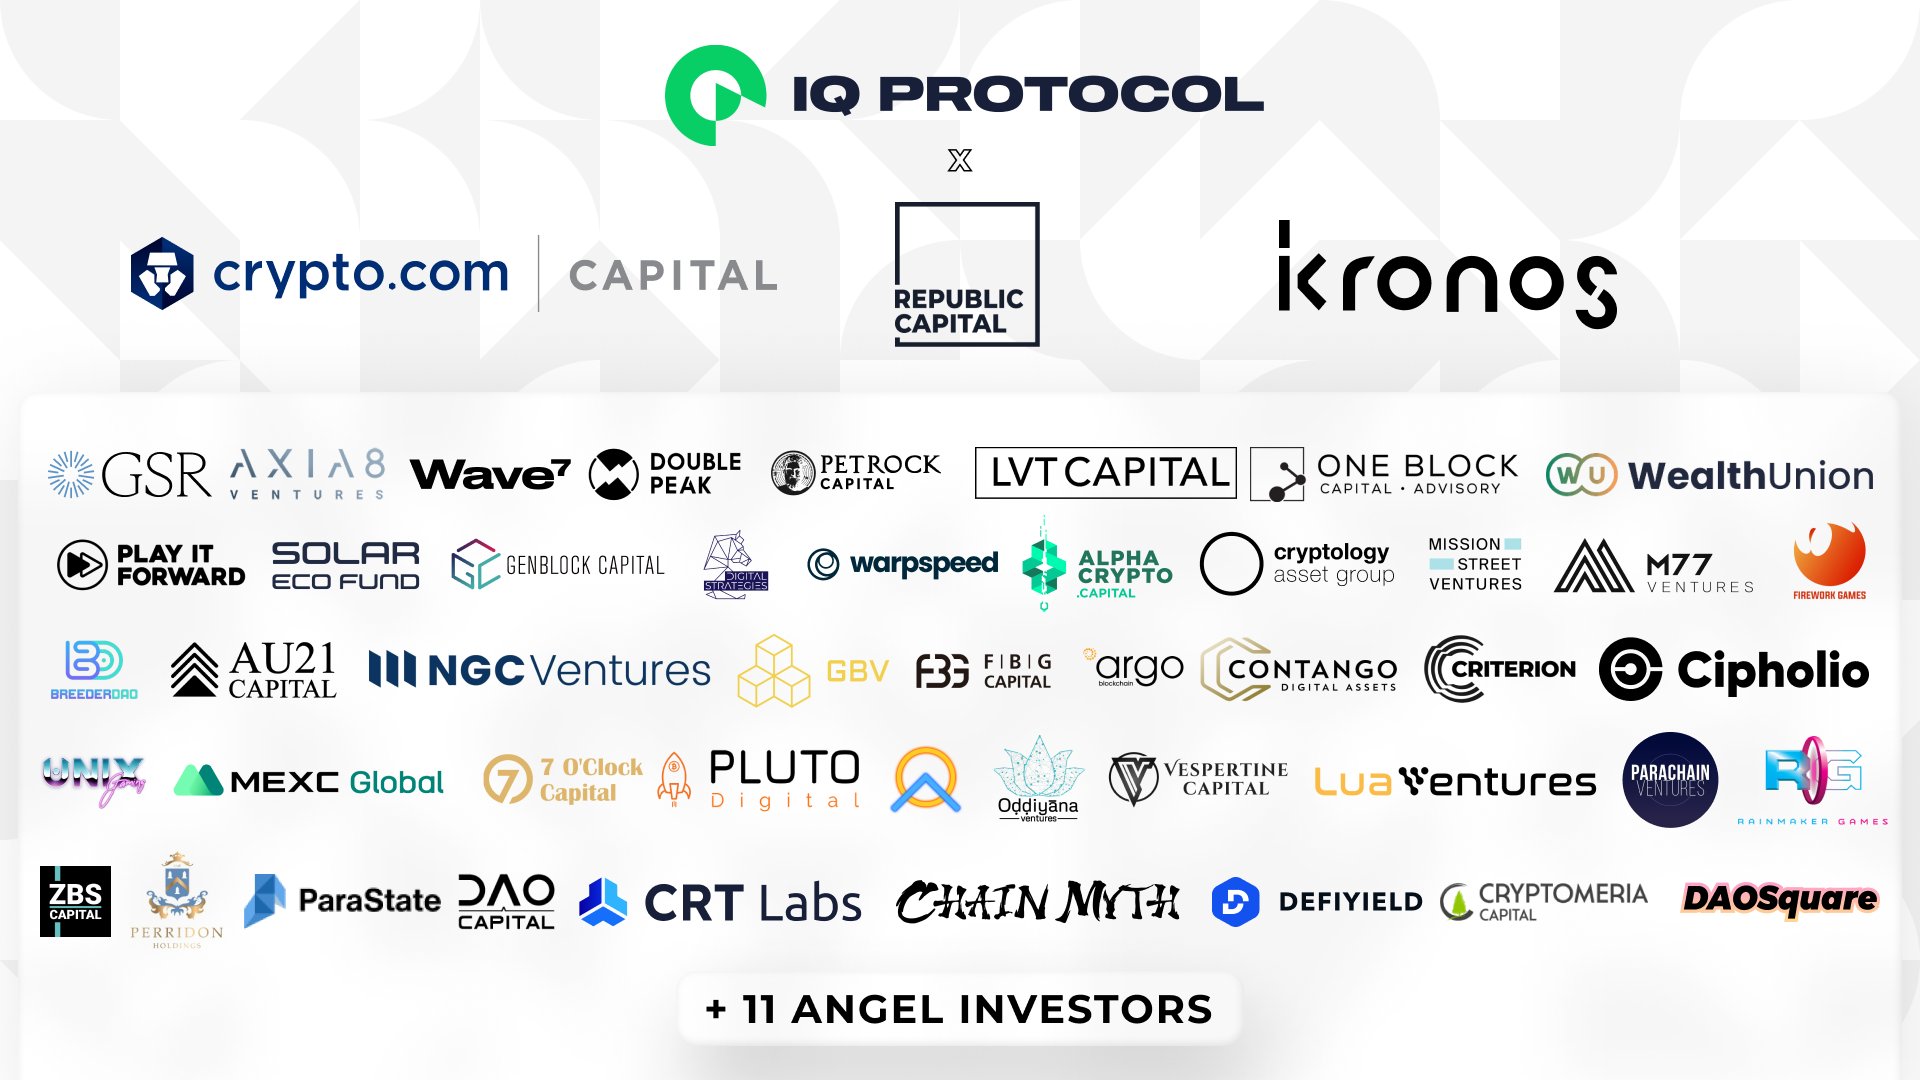 IQ protocol investors